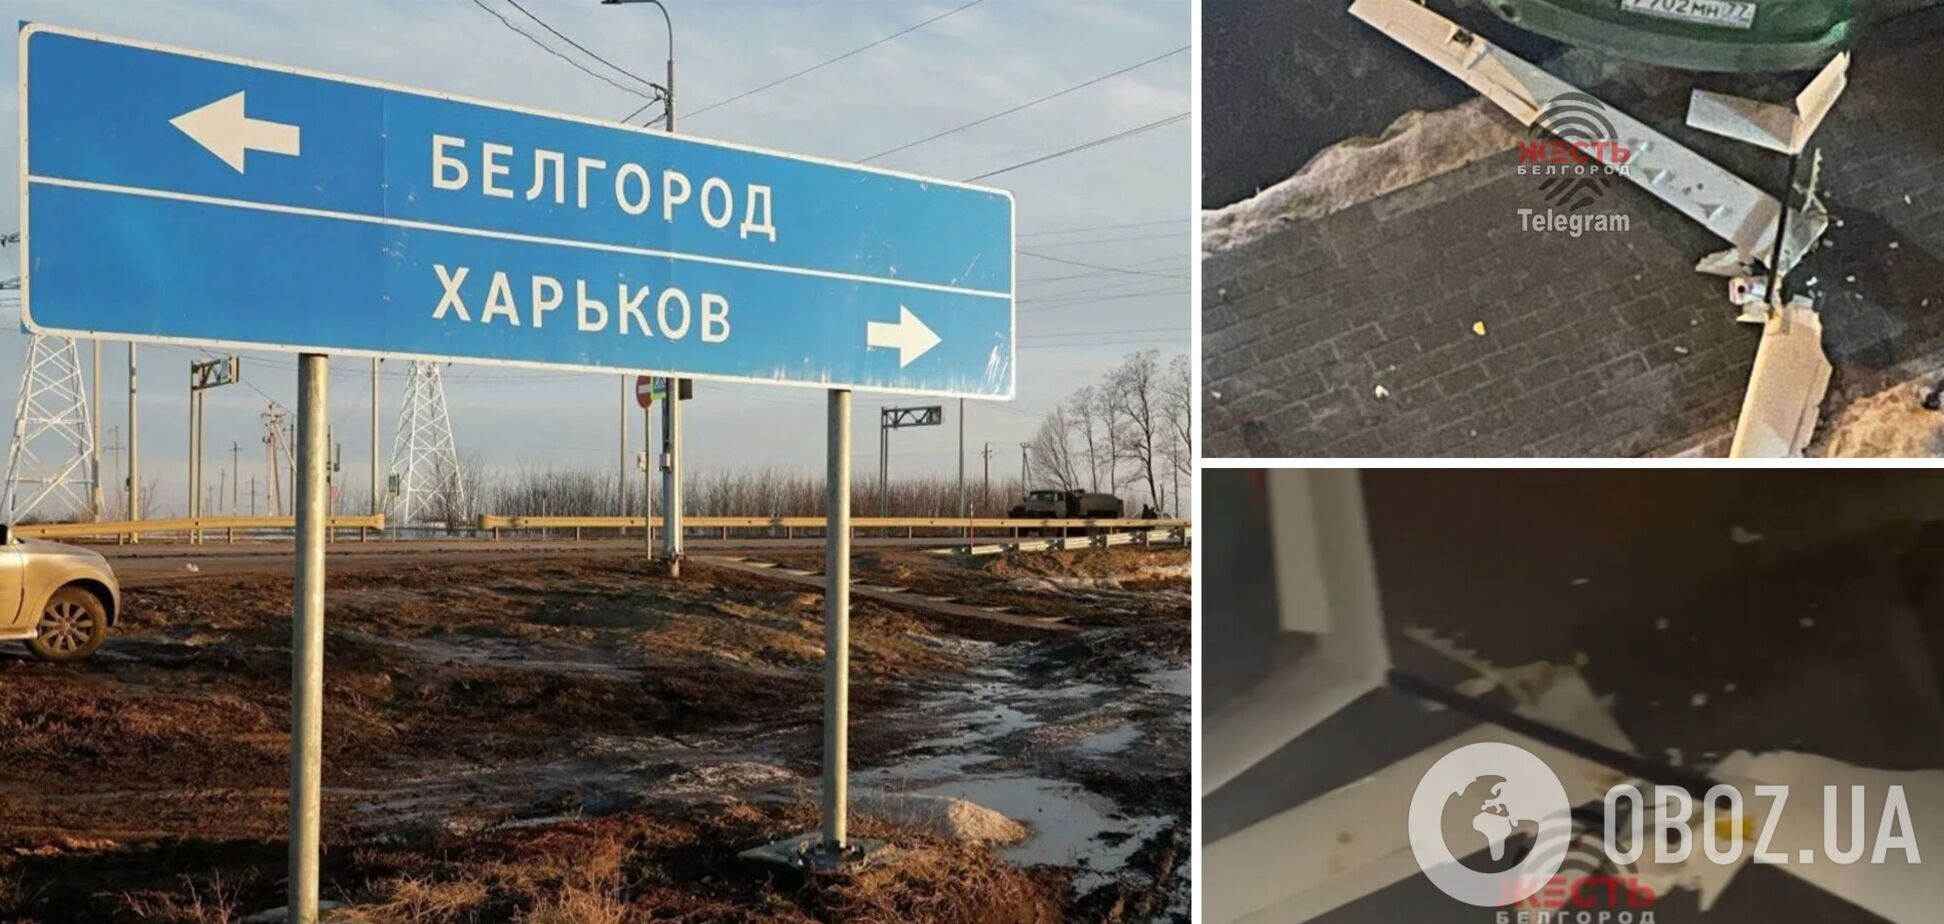 В Белгороде обнаружили обломки трех беспилотников: упали во дворе многоэтажки. Фото и видео